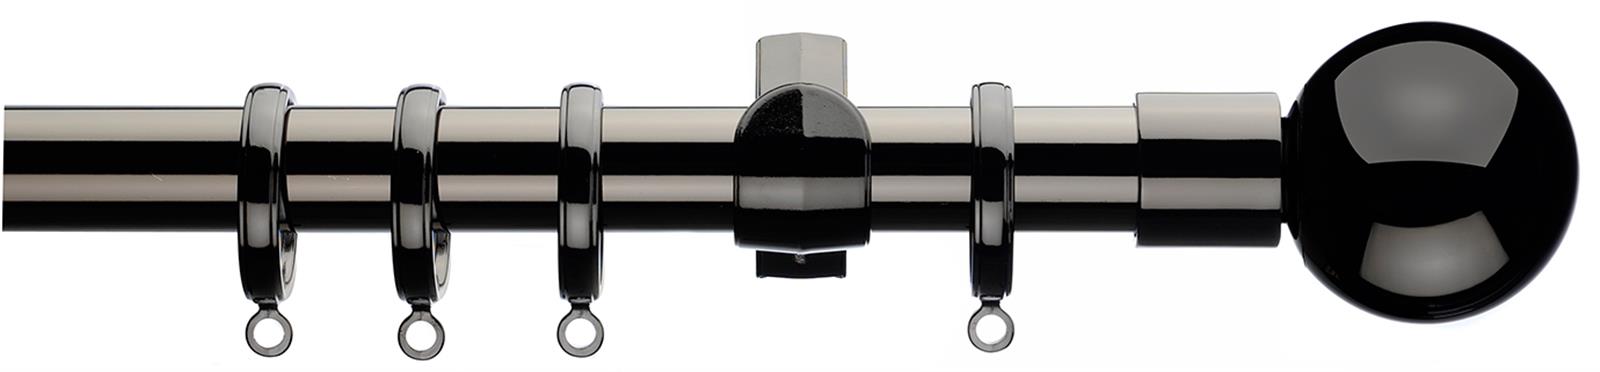 Integra Inspired Lustra 28mm Pole Curvatura Black Nickel Sphera